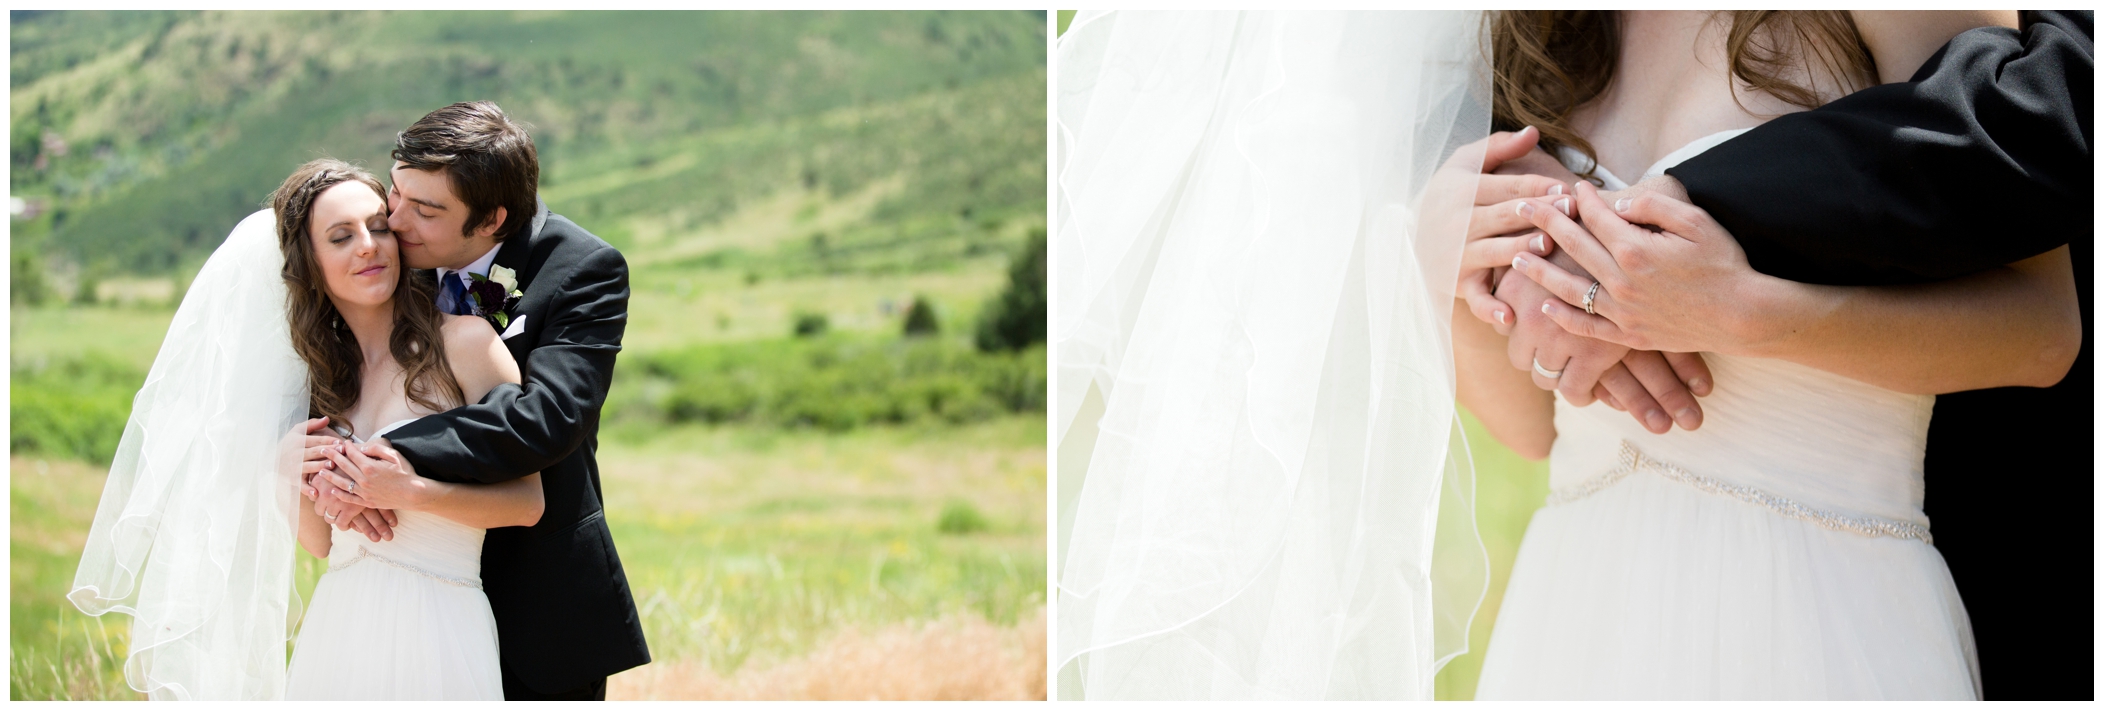 Colorado mountain wedding inspiration 